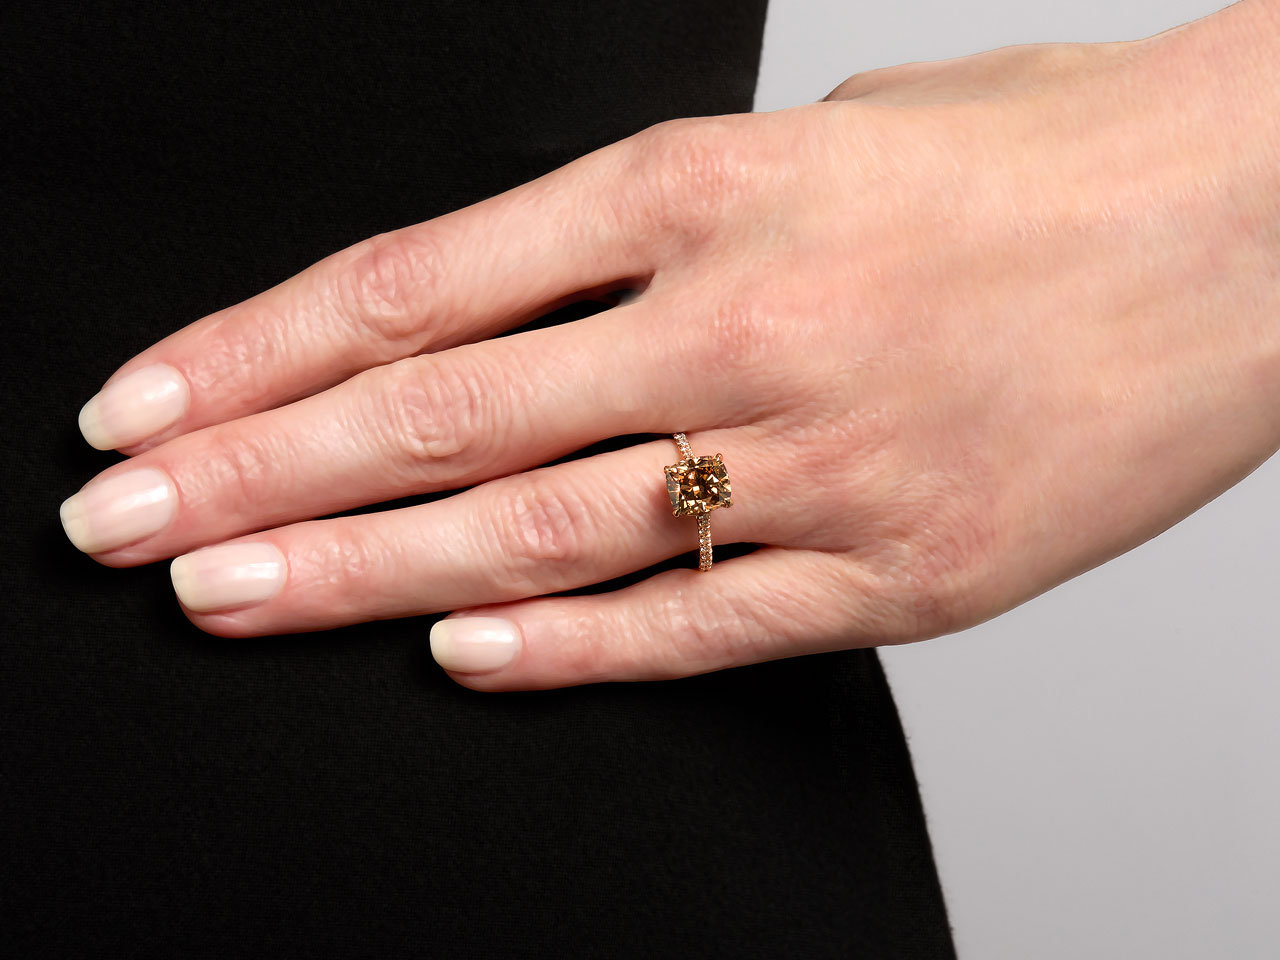 Beladora 'Bespoke' Fancy Dark Orange-Brown Diamond Ring in 18K Rose Gold